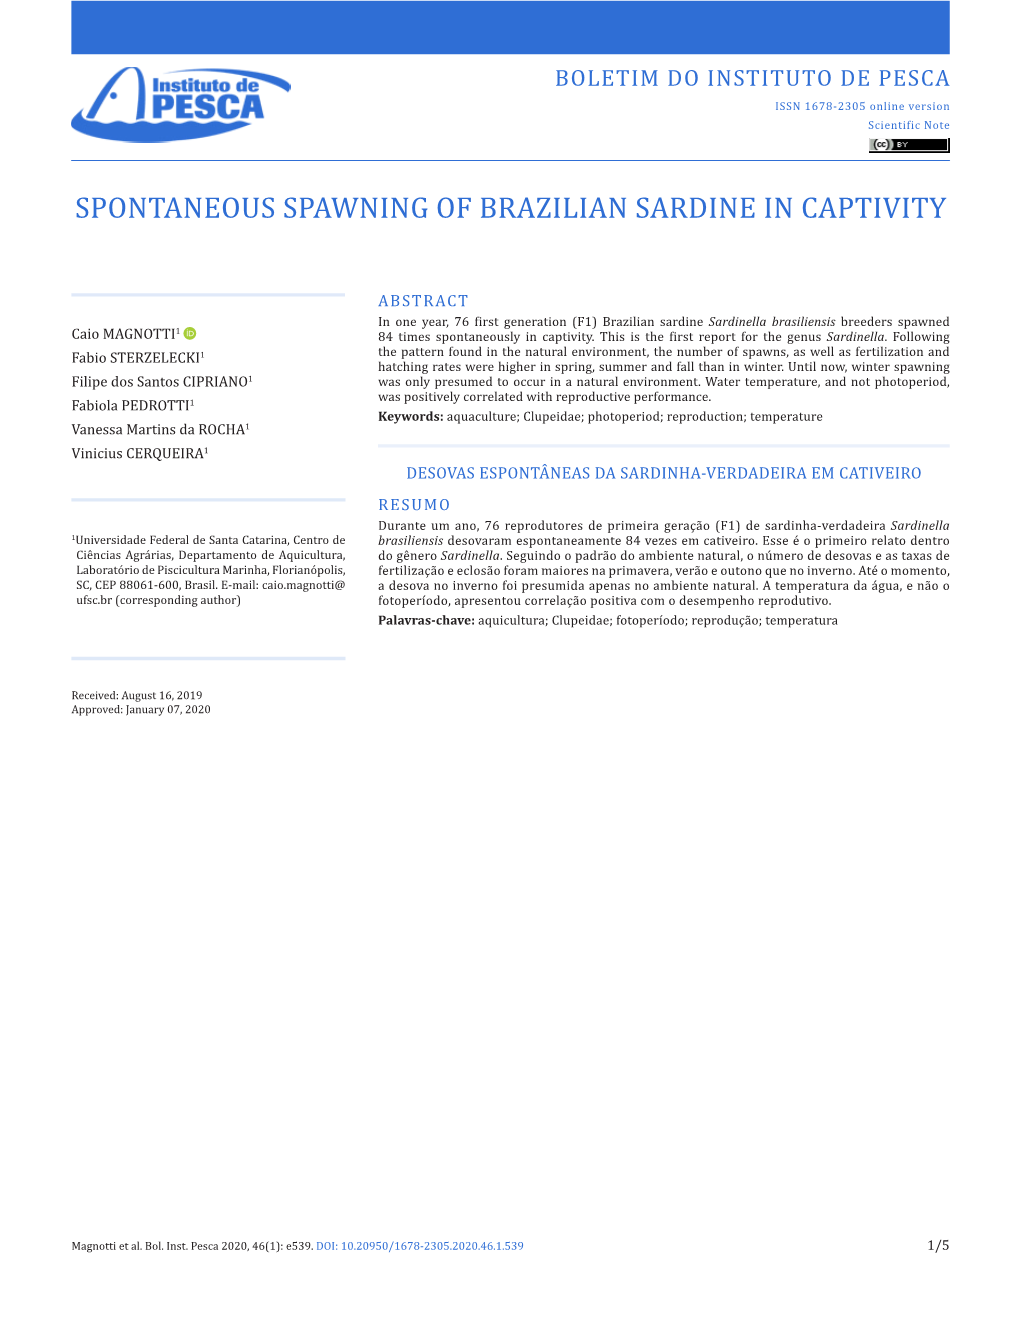 Spontaneous Spawning of Brazilian Sardine in Captivity